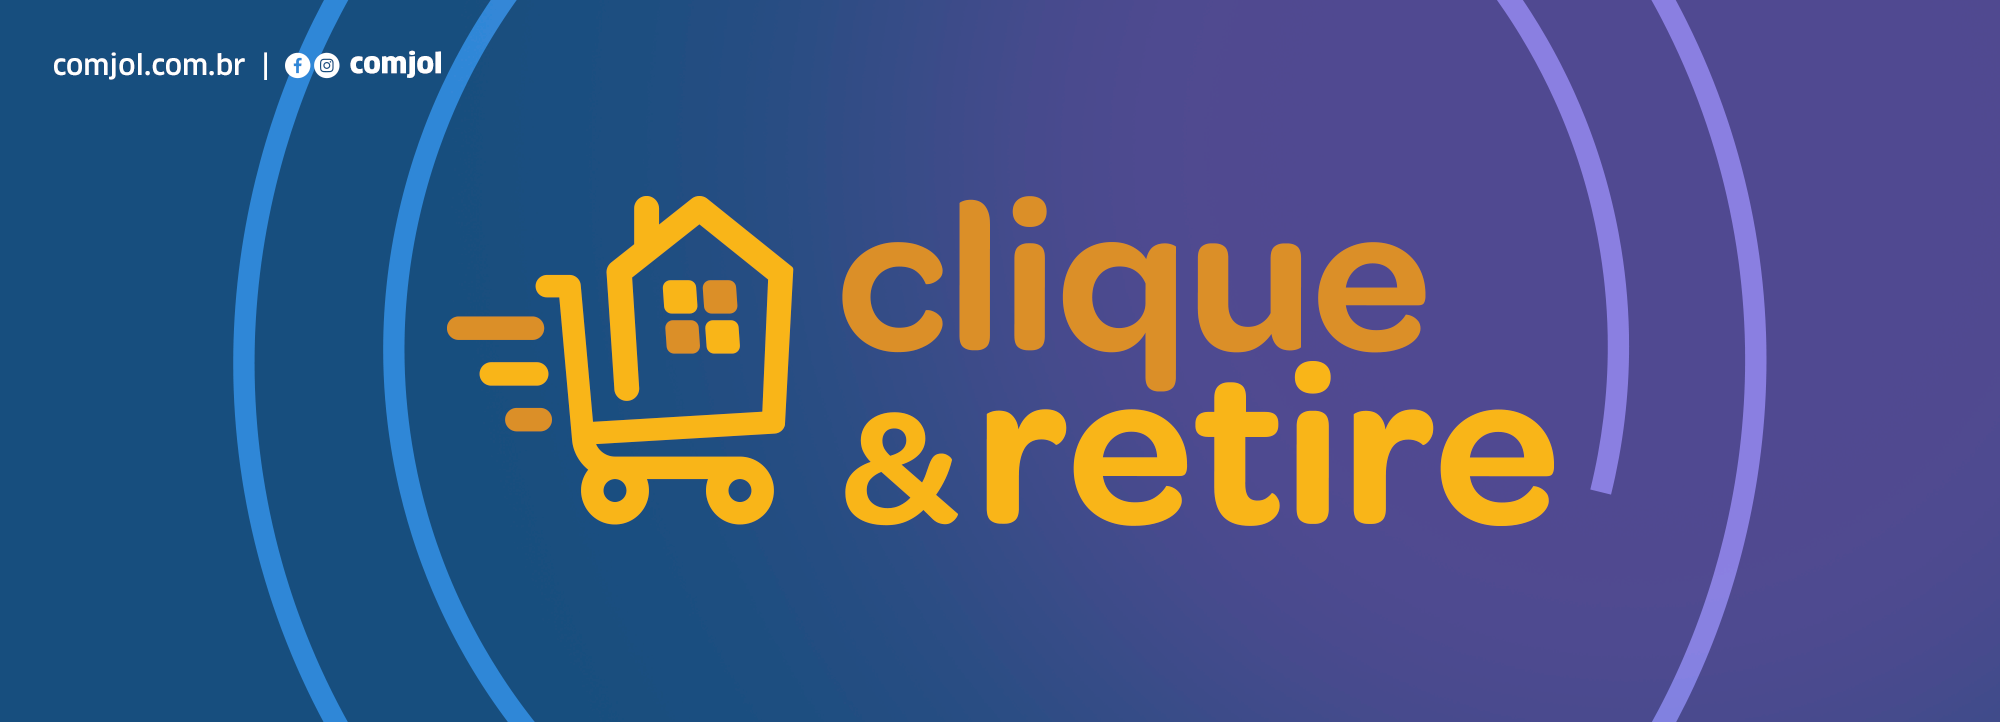 Banner 11 - Clique e Retire